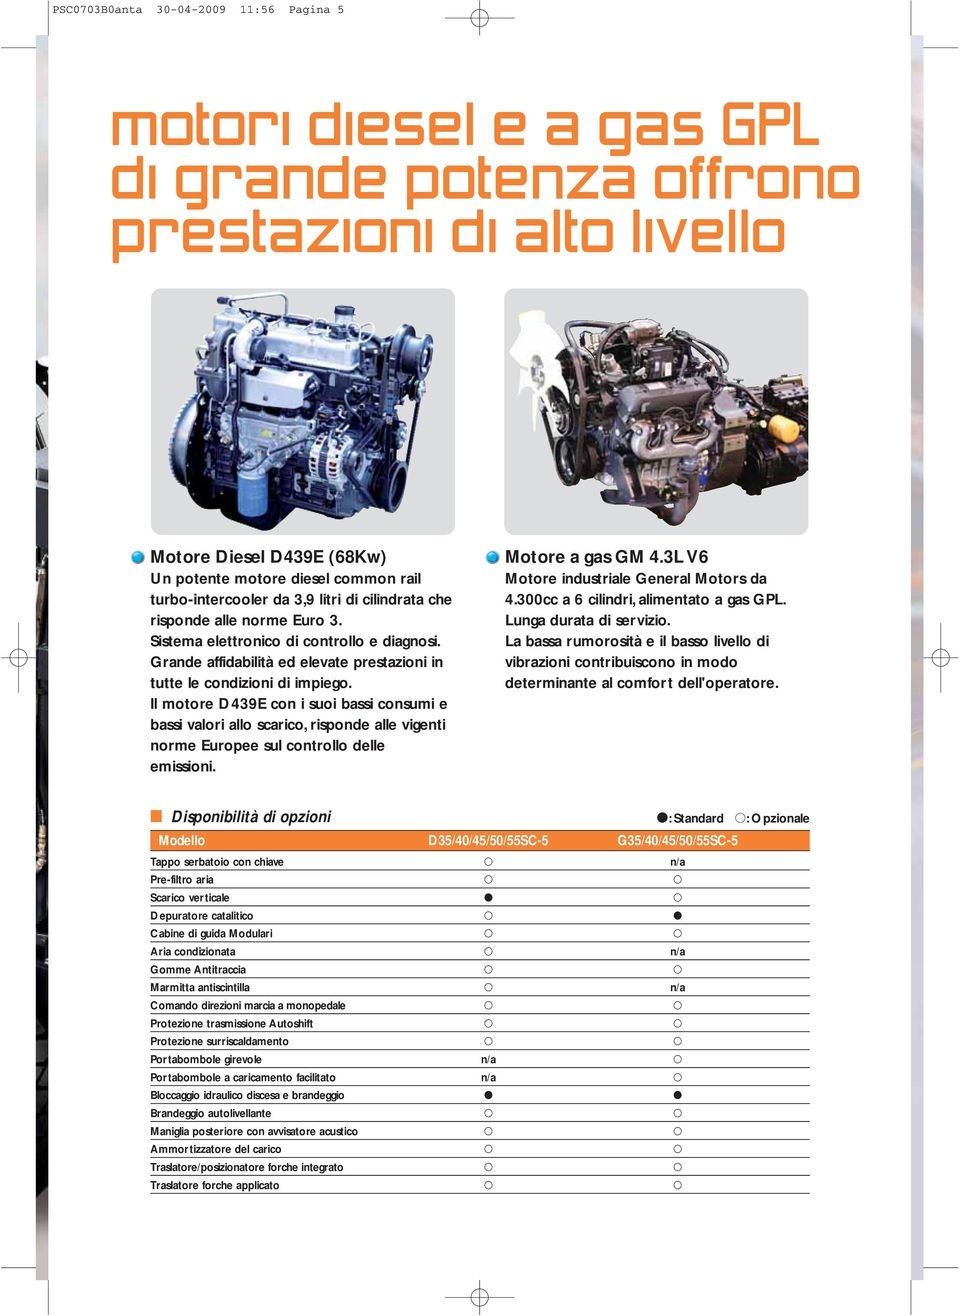 Il motore D439E con i suoi bassi consumi e bassi valori allo scarico, risponde alle vigenti norme Europee sul controllo delle emissioni. Motore a gas GM 4.3L V6 Motore industriale General Motors da 4.